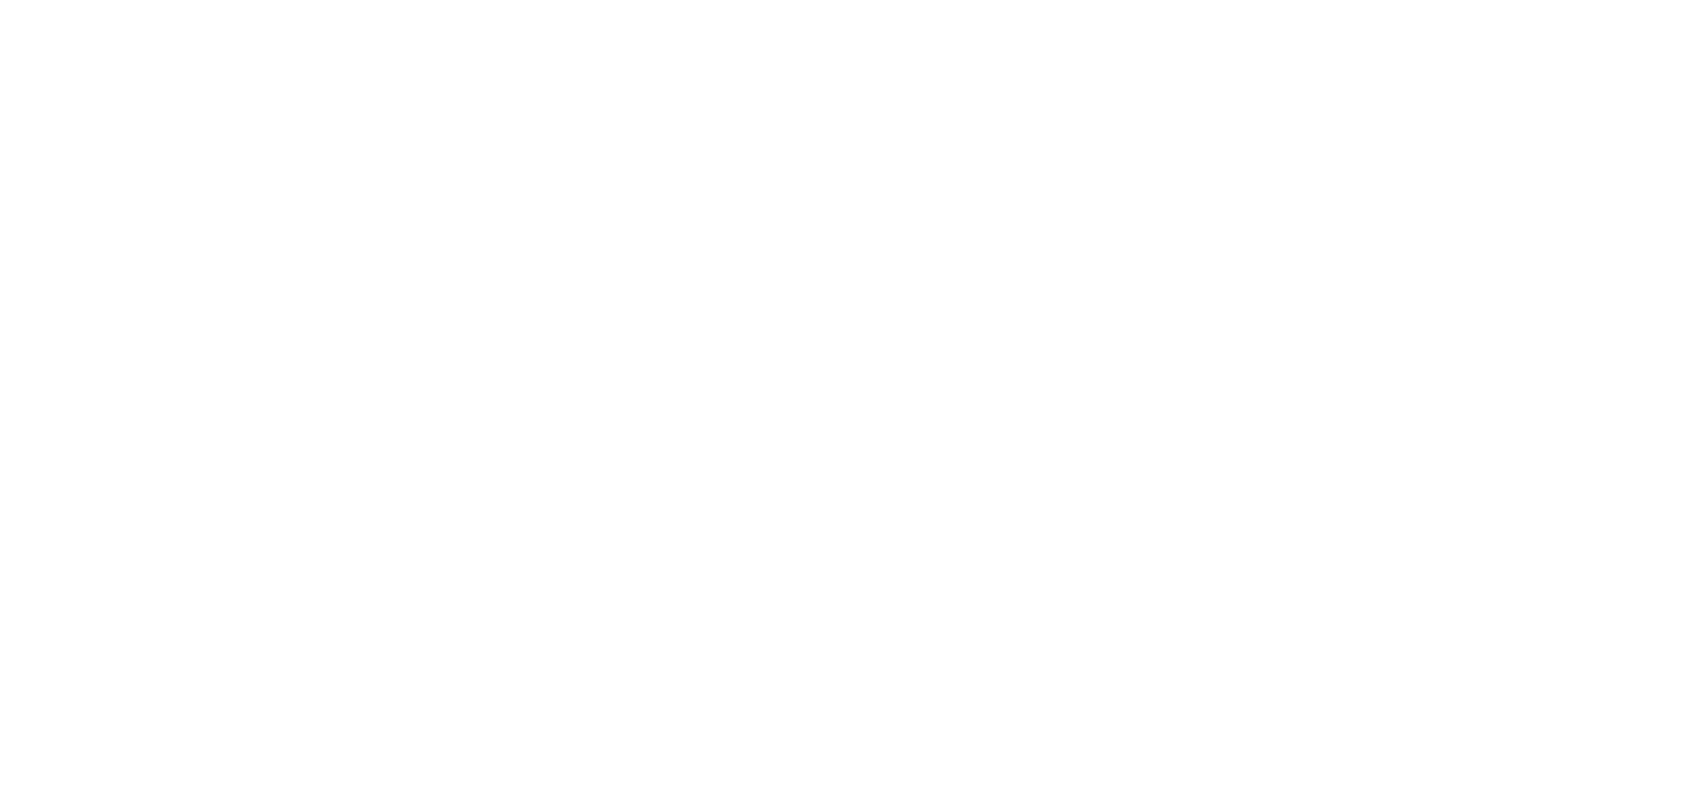 Socialismo e Liberdade - PSOL 50